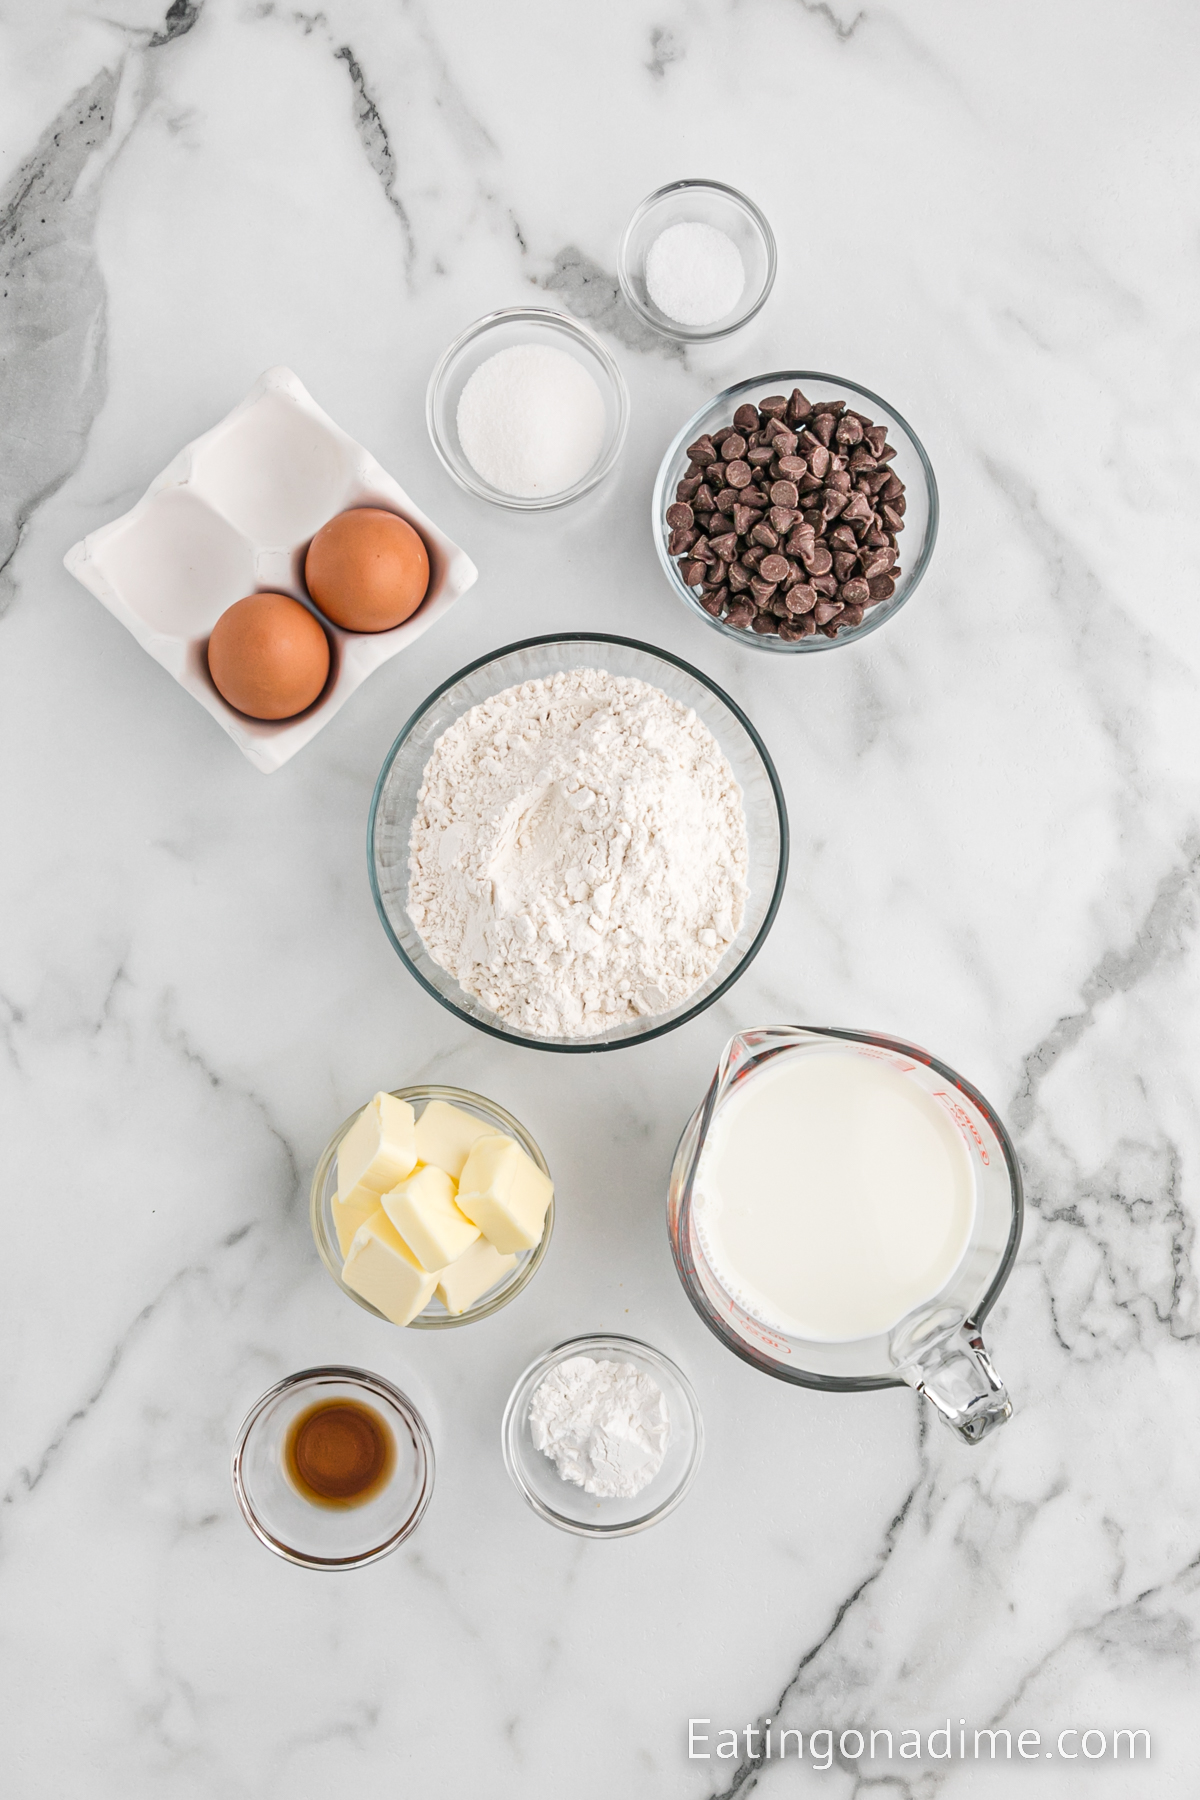 Ingredients needed - flour, sugar, baking powder, salt, butter, vanilla, milk, eggs, chocolate chips